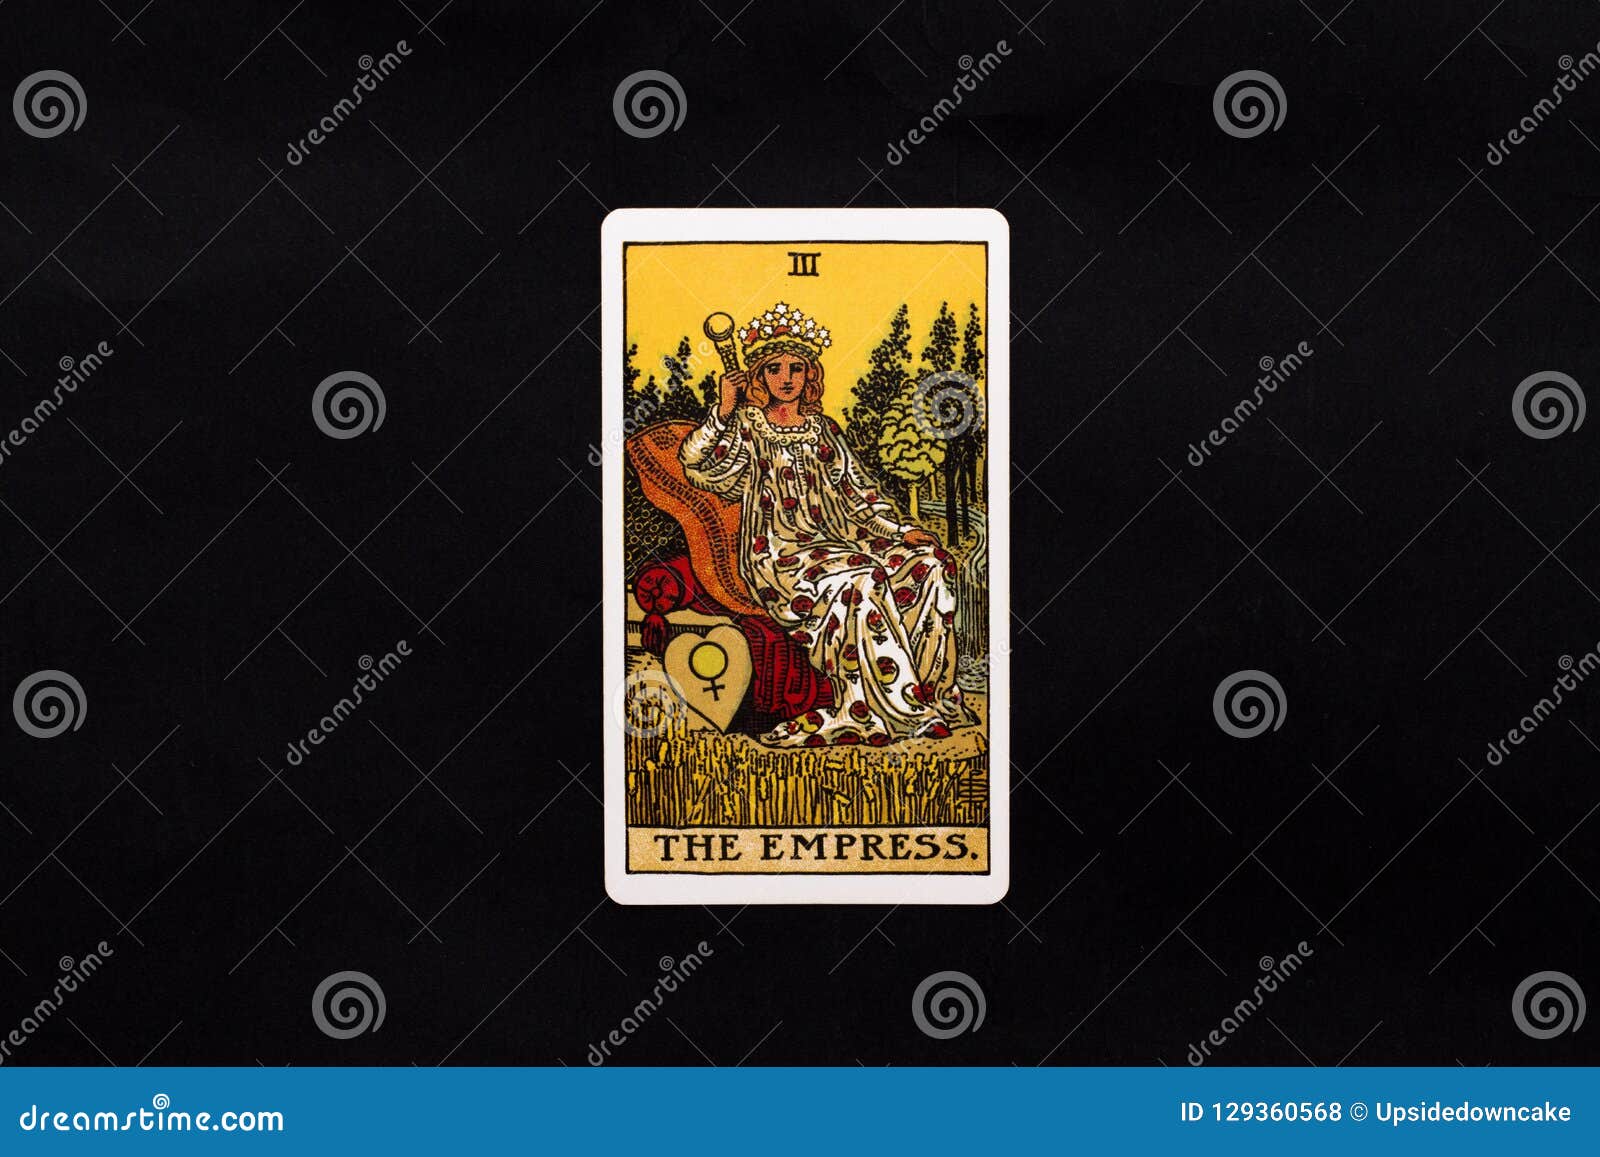 the empress major arcana tarot card